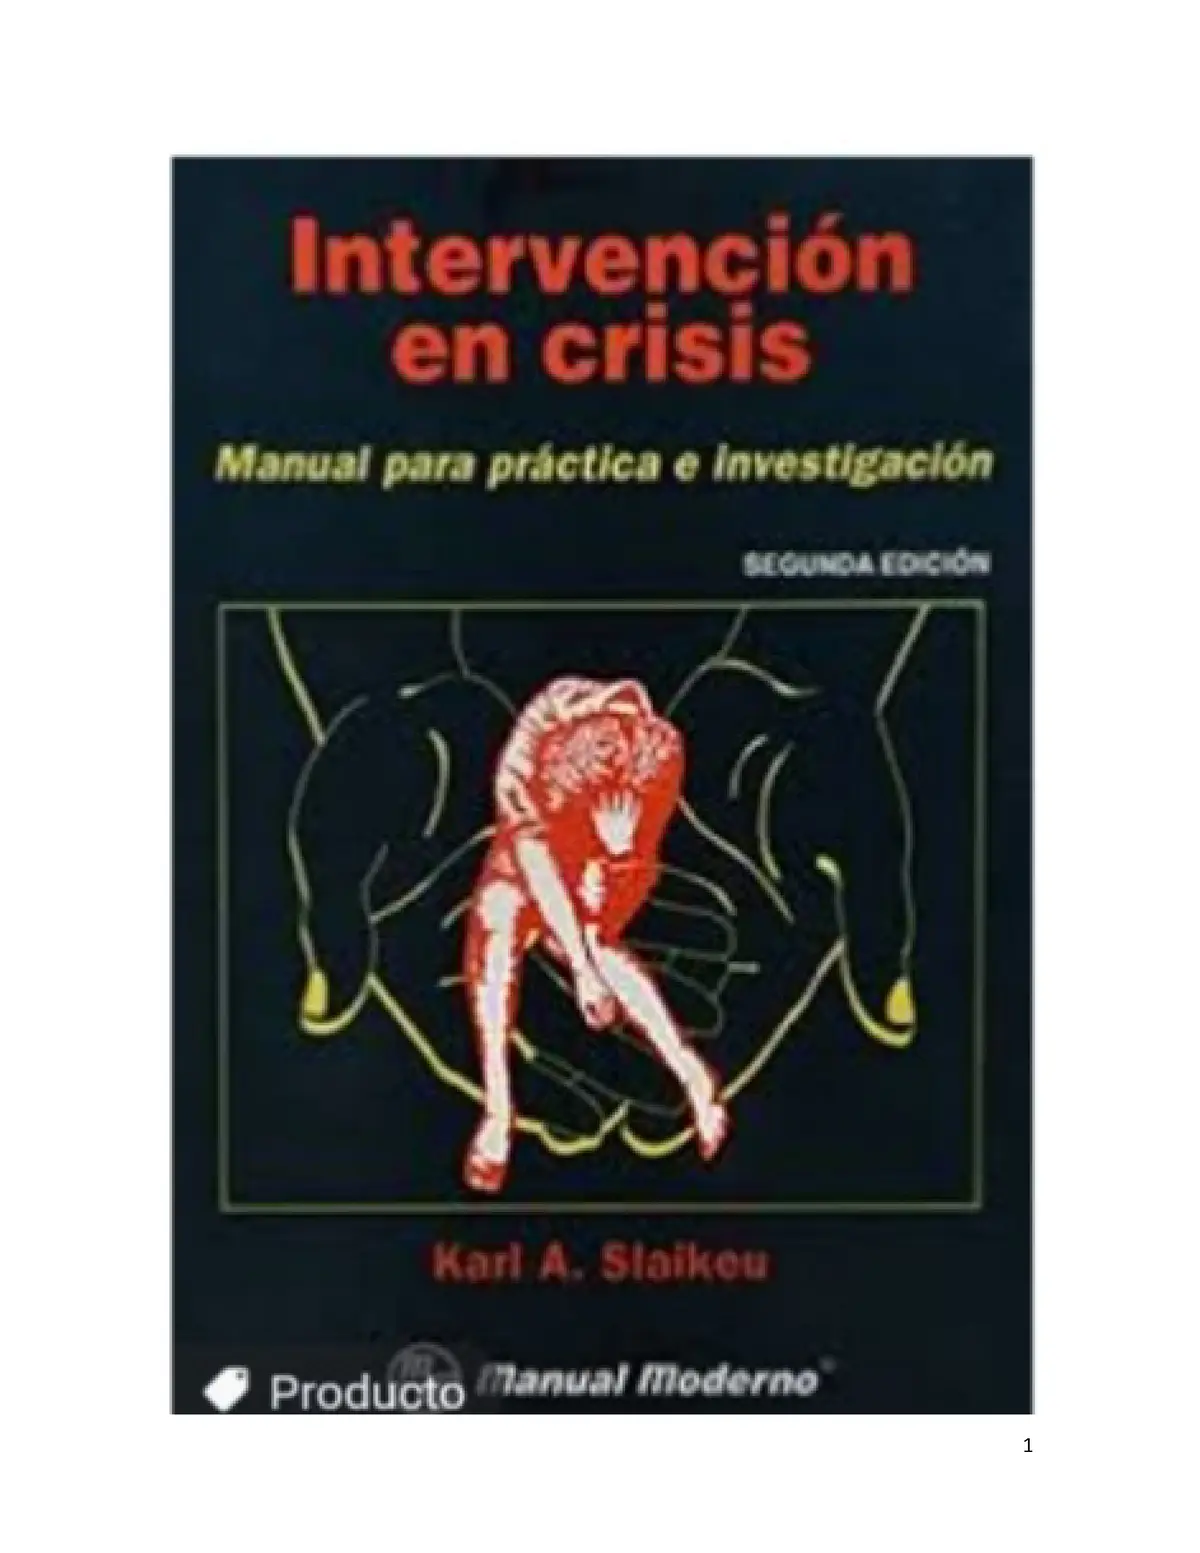 intervencion en crisis slaikeu resumen - Qué es la intervención en crisis según Slaikeu